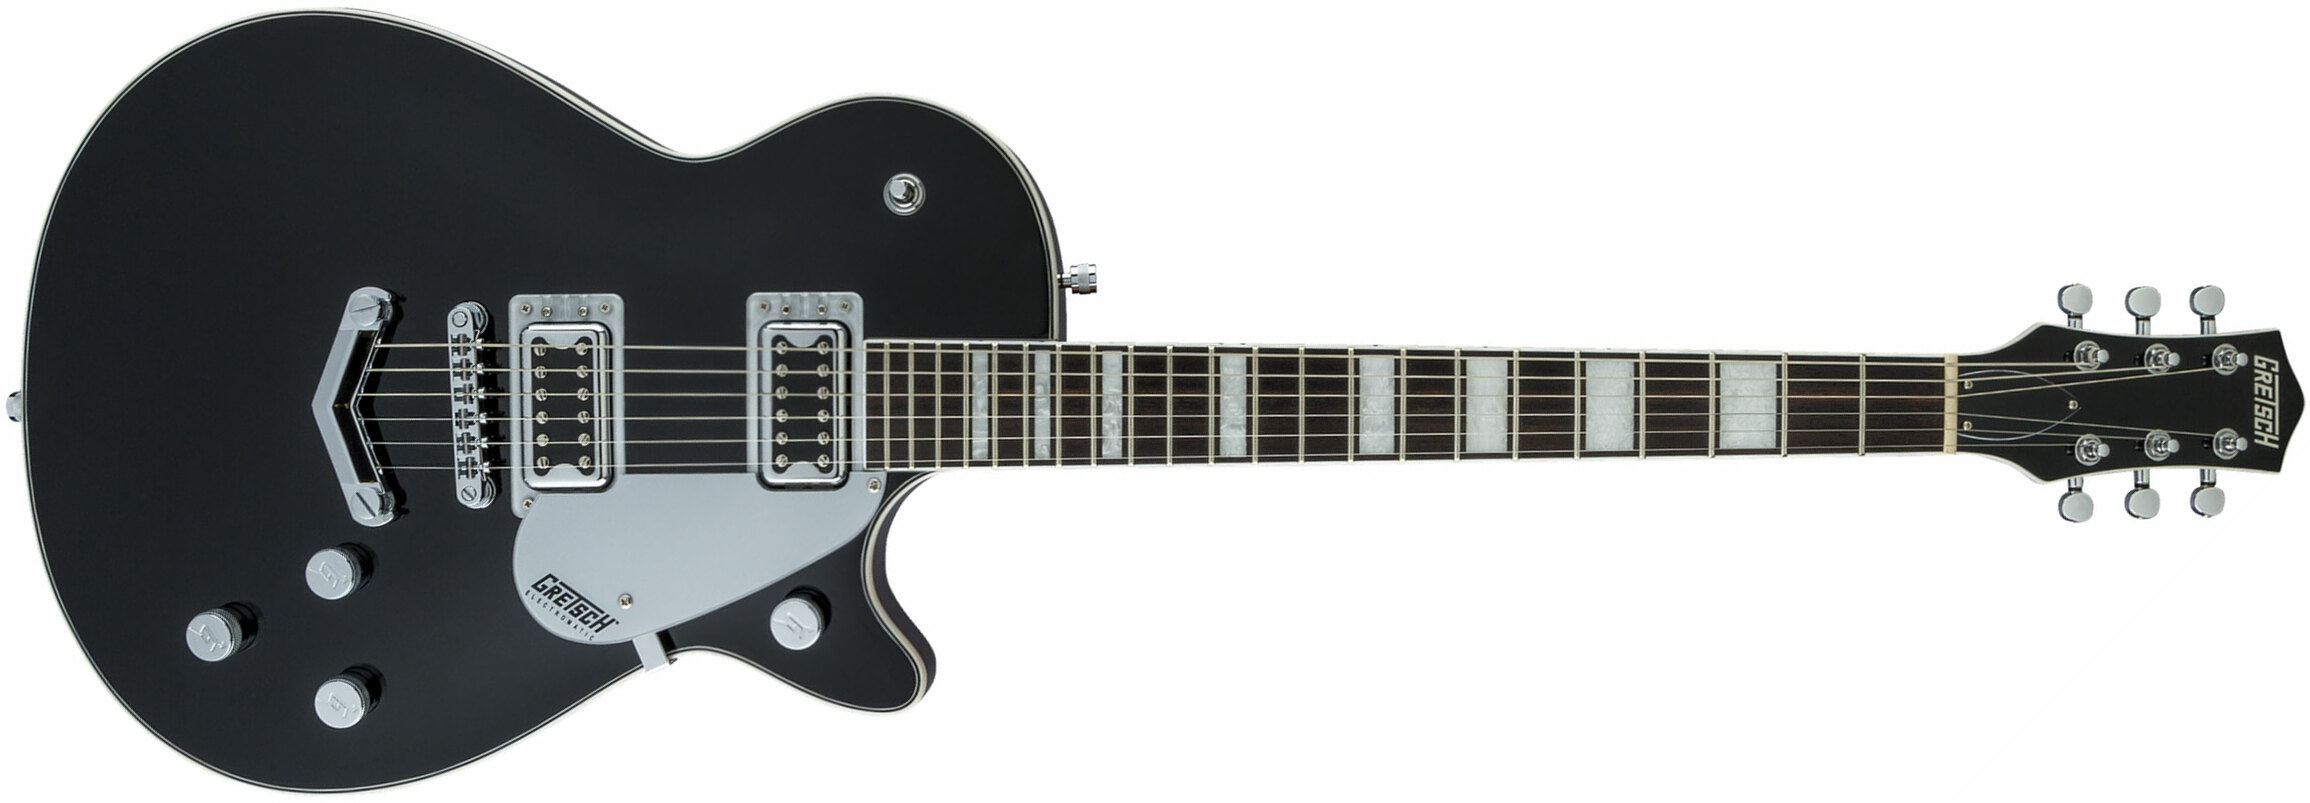 Gretsch G5220 Electromatic Jet Bt V-stoptail Hh Ht Wal - Black - Guitarra eléctrica de corte único. - Main picture